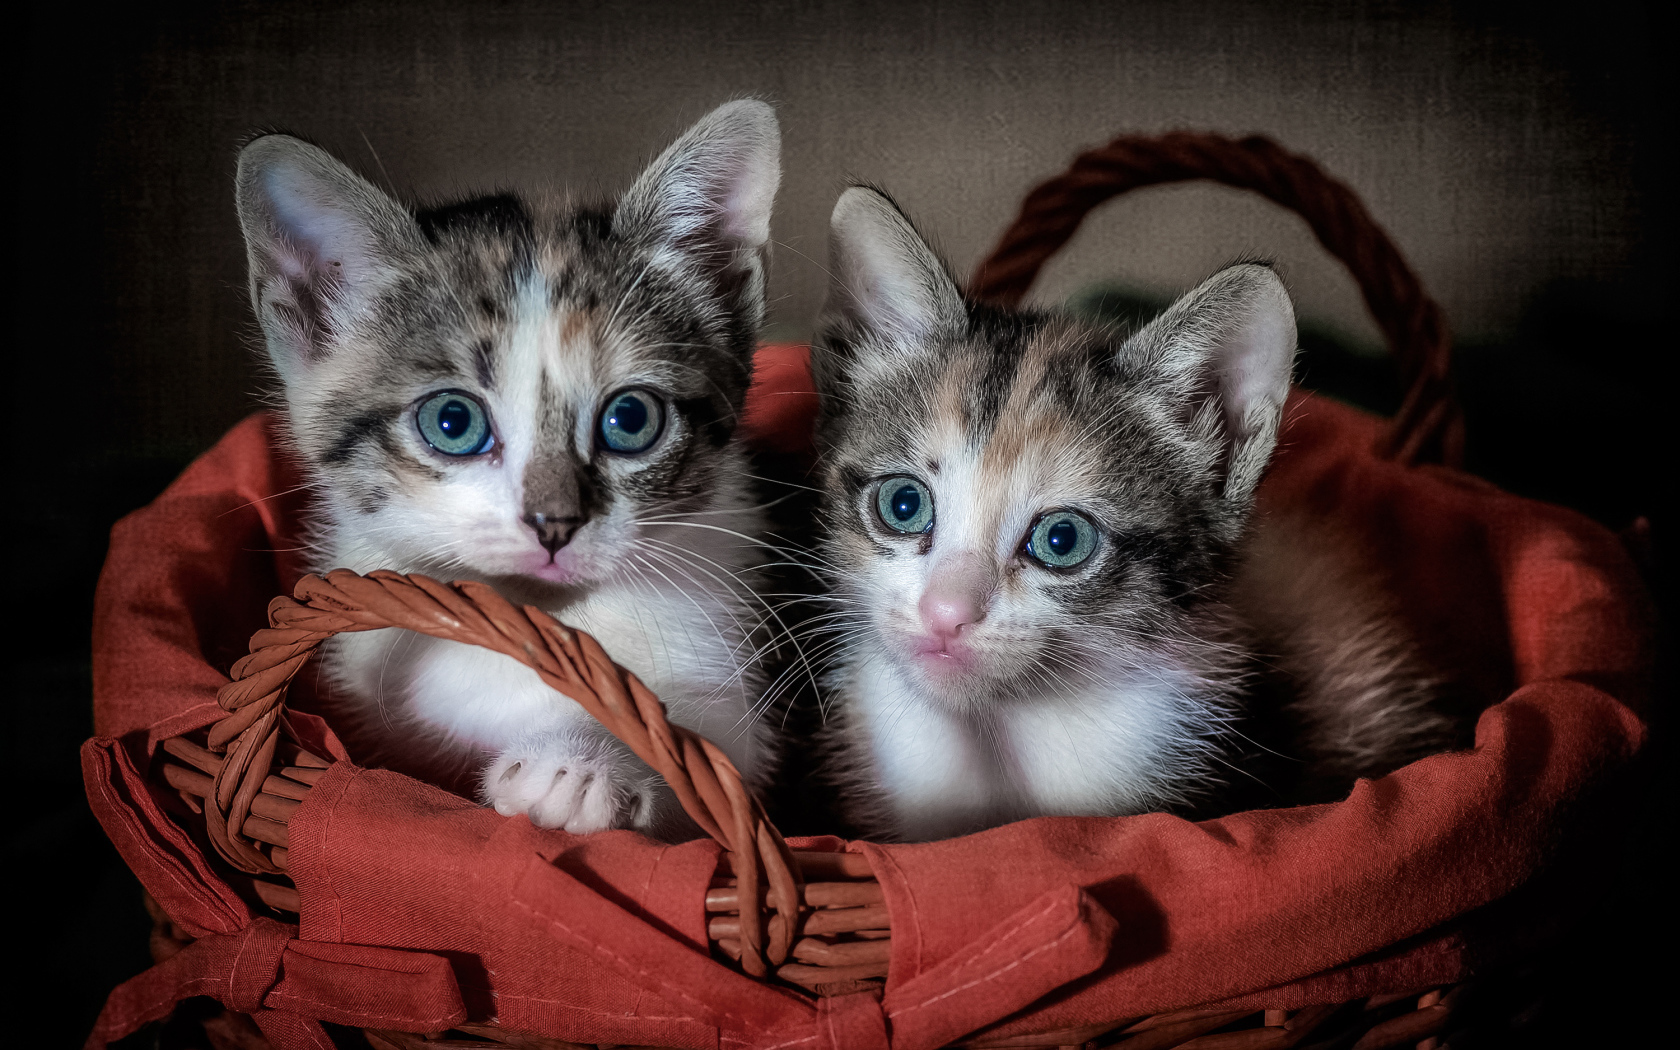 Two little kittens in a big basket